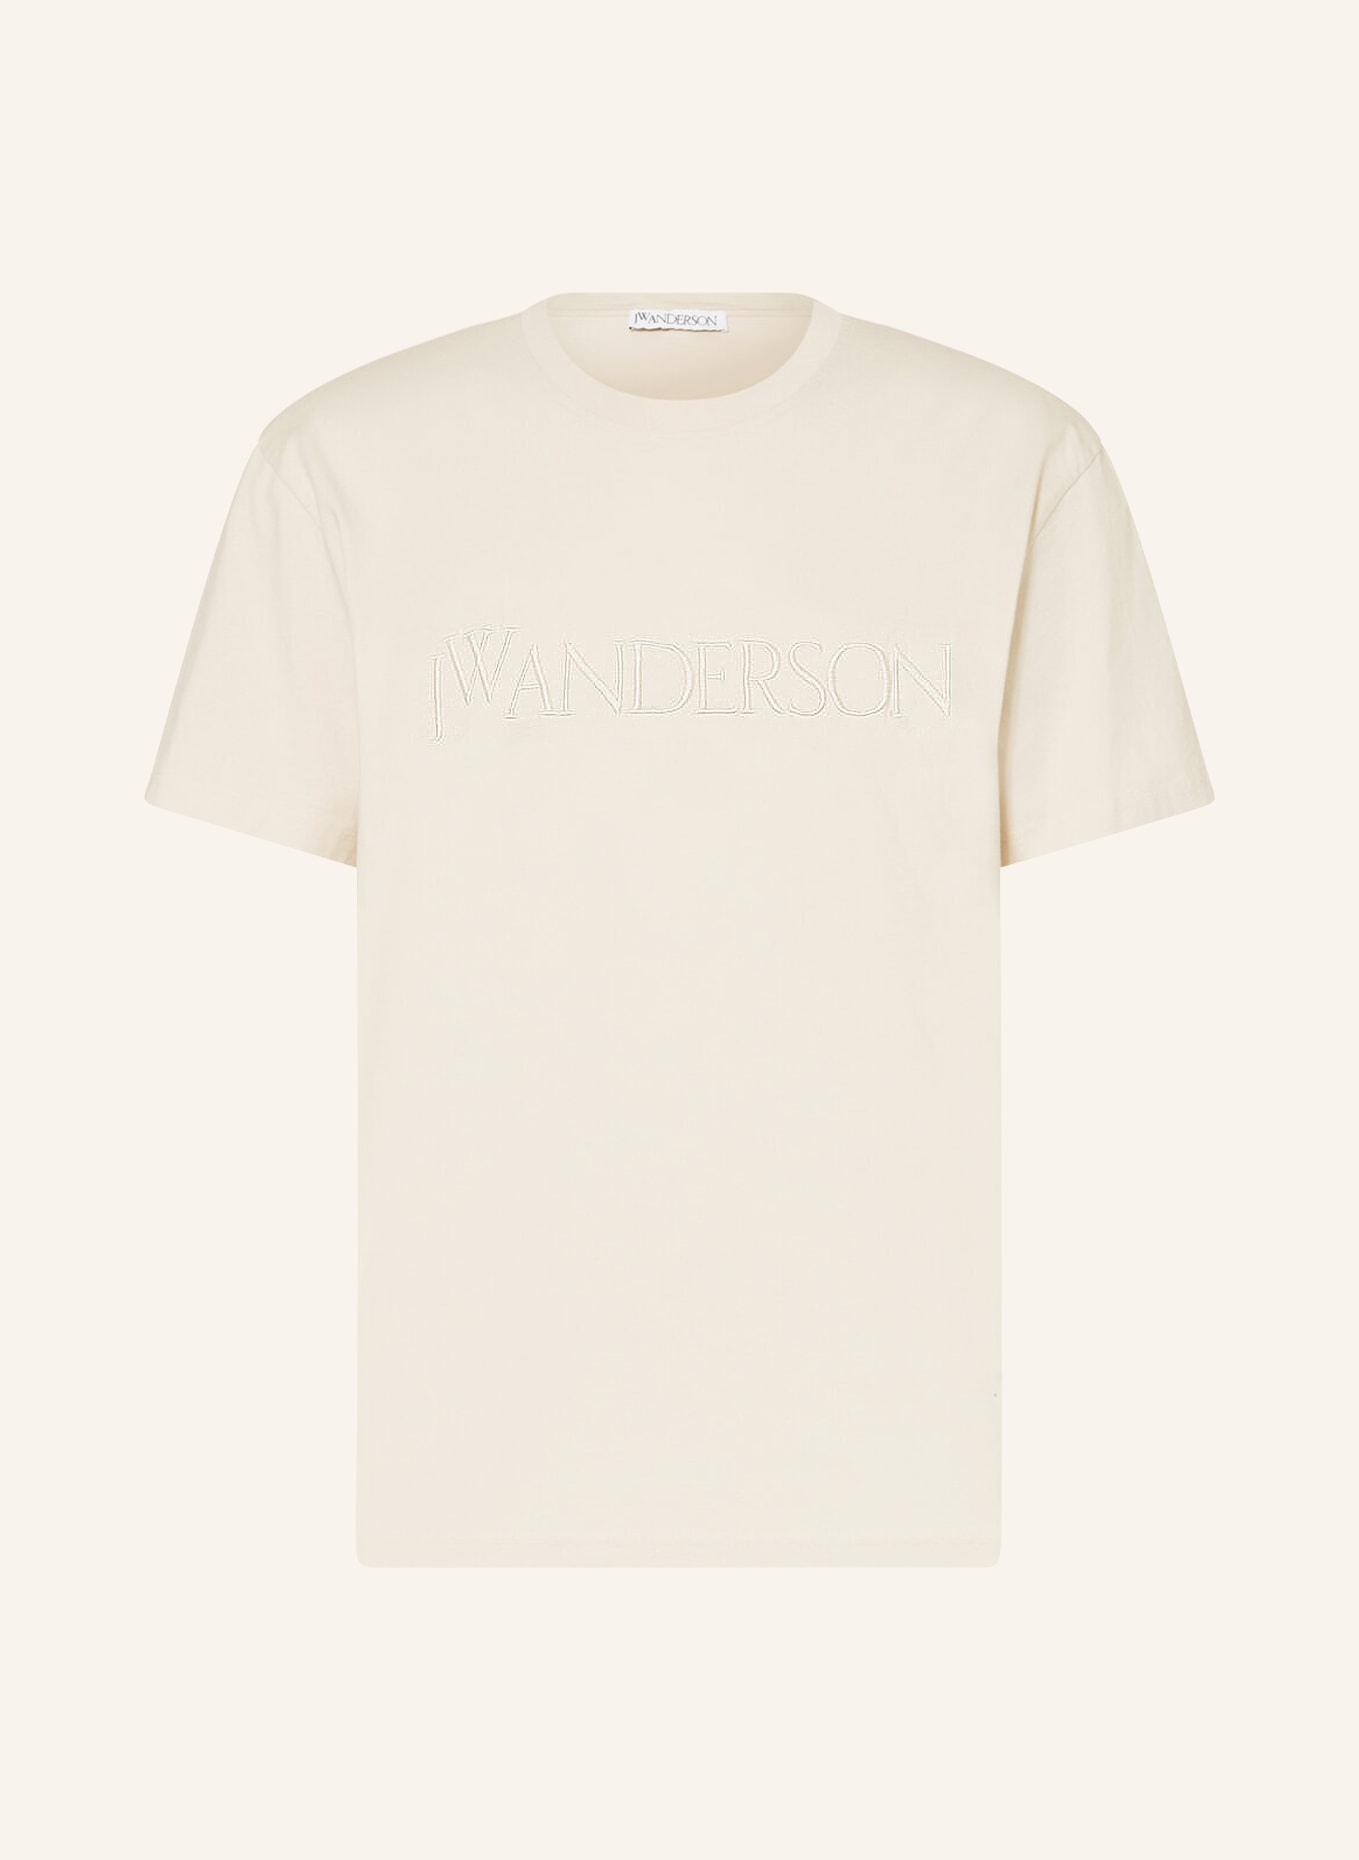 JW ANDERSON T-Shirt mit Stickereien, Farbe: BEIGE (Bild 1)